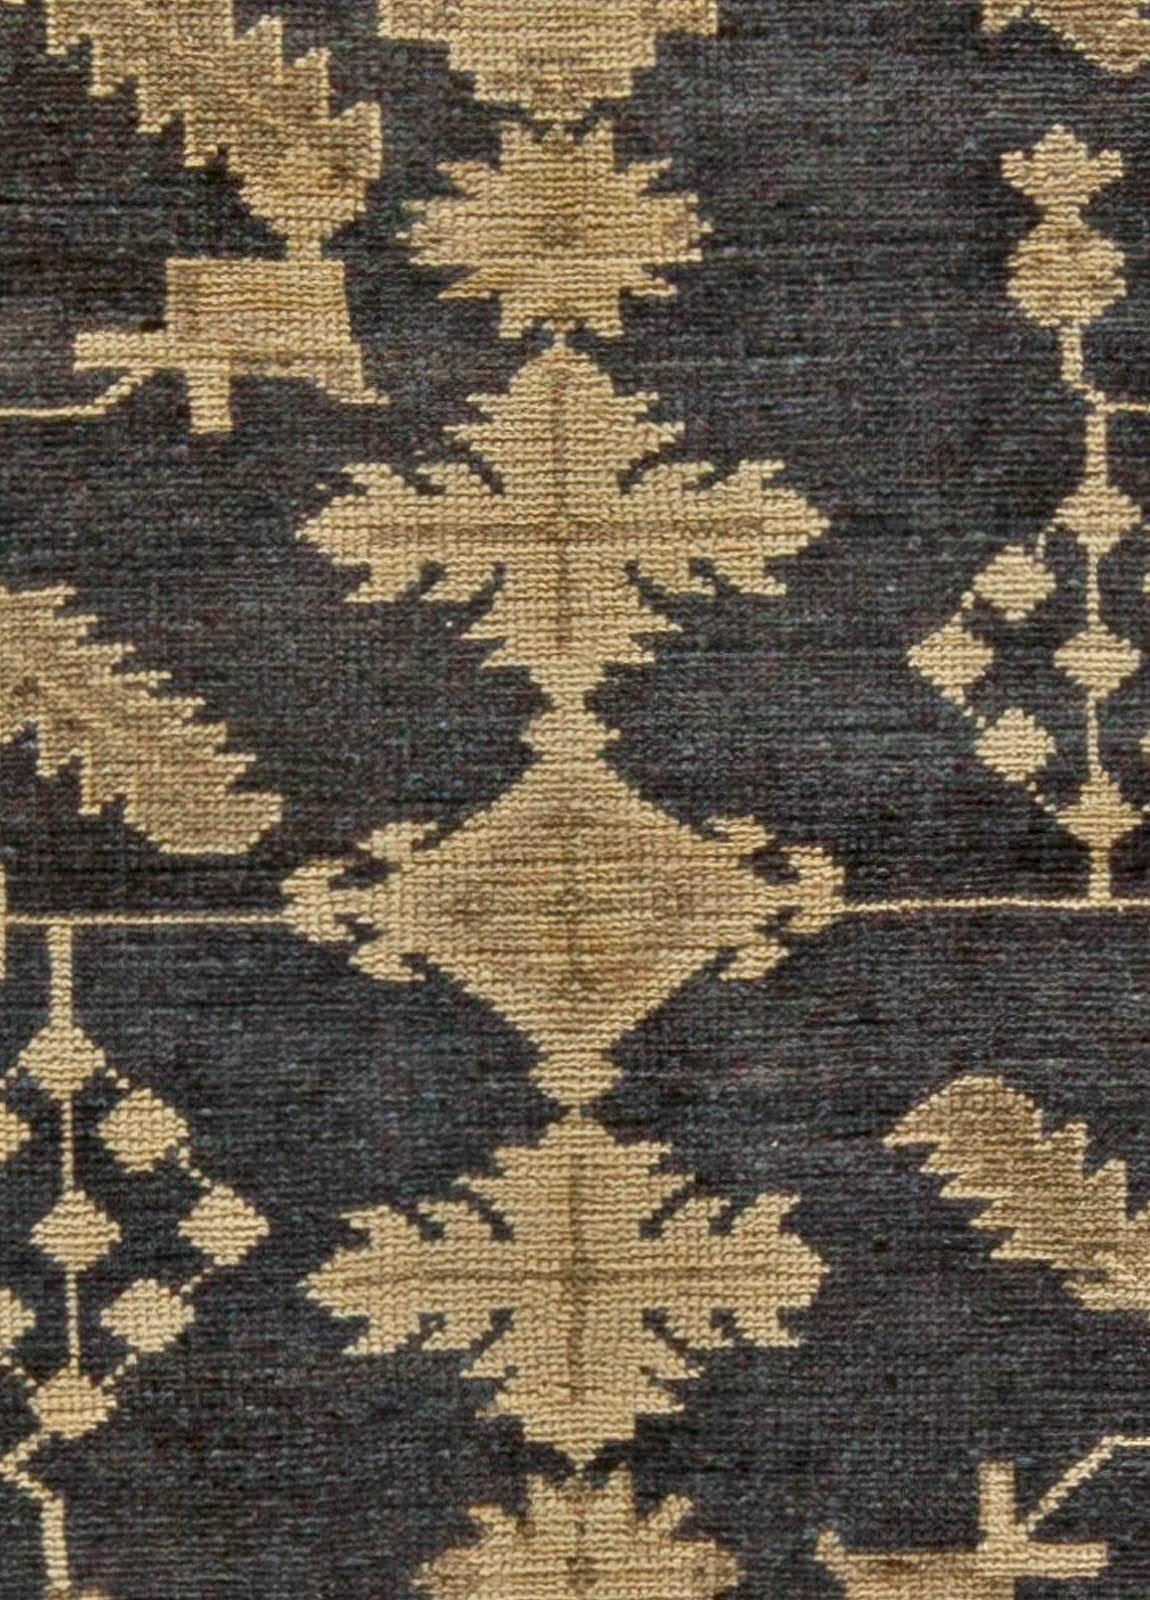 Early 20th century Turkish Oushak handmade rug
Size: 6'2